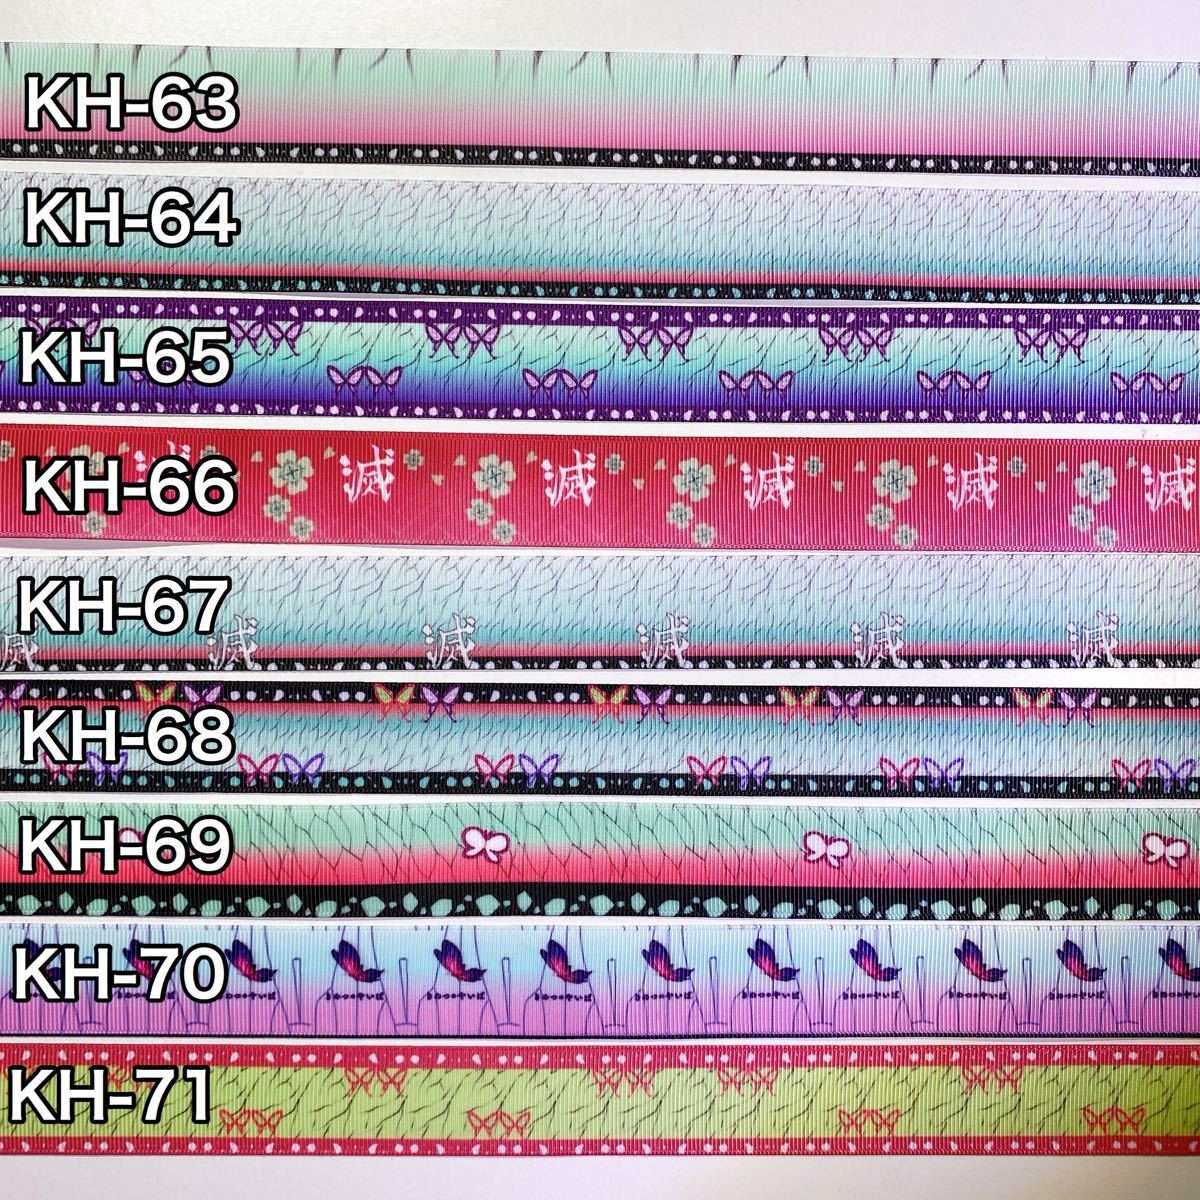 グログランリボン【KH-63】-【KH-71】